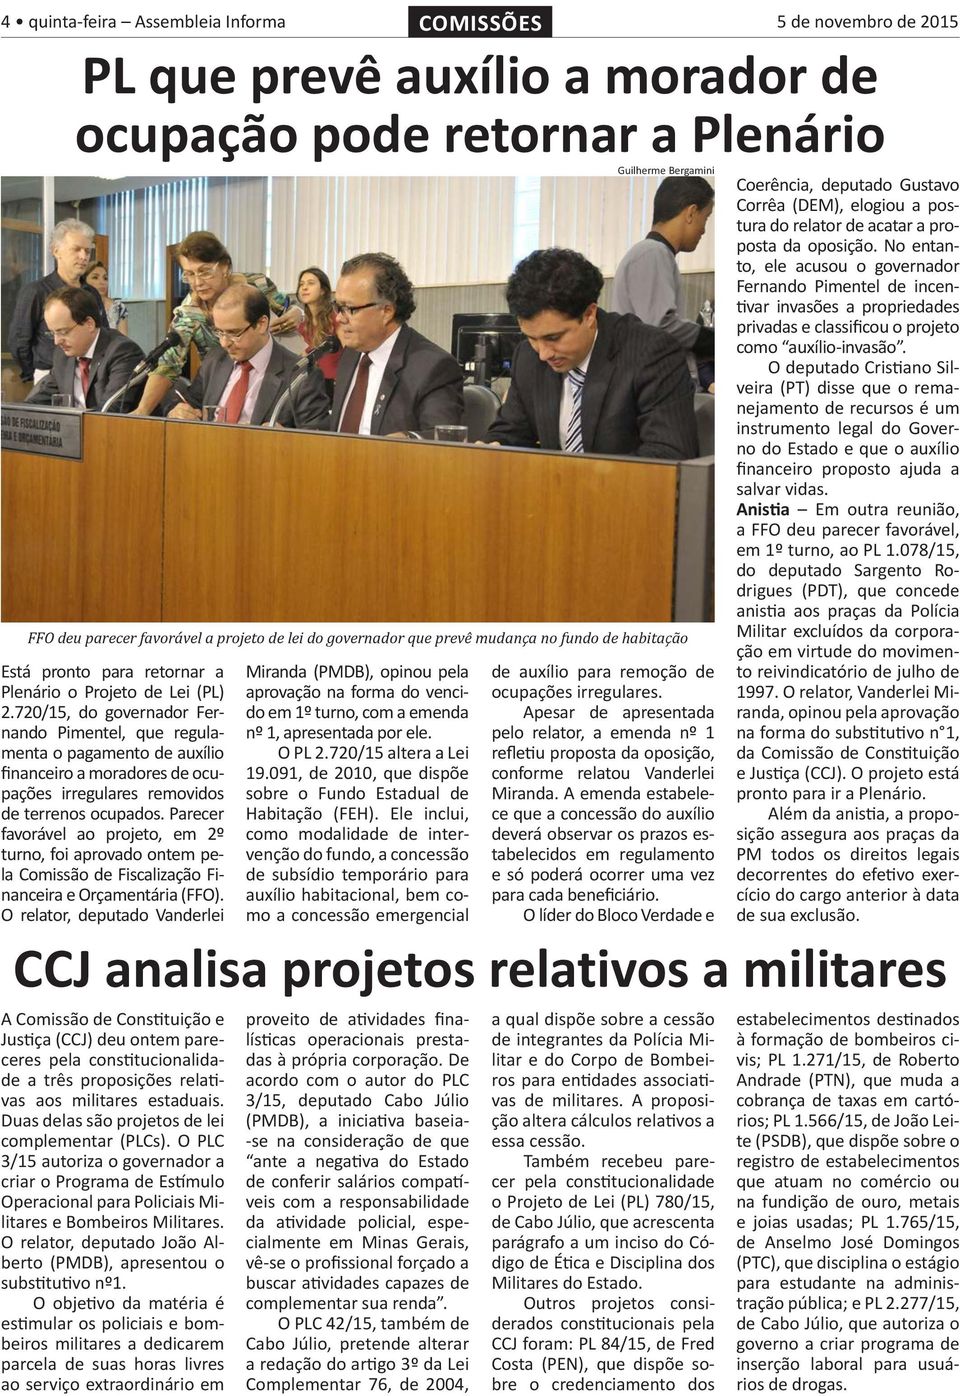 O PLC 3/15 autoriza o governador a criar o Programa de Estímulo Operacional para Policiais Militares e Bombeiros Militares. O relator, deputado João Alberto (PMDB), apresentou o substitutivo nº1.